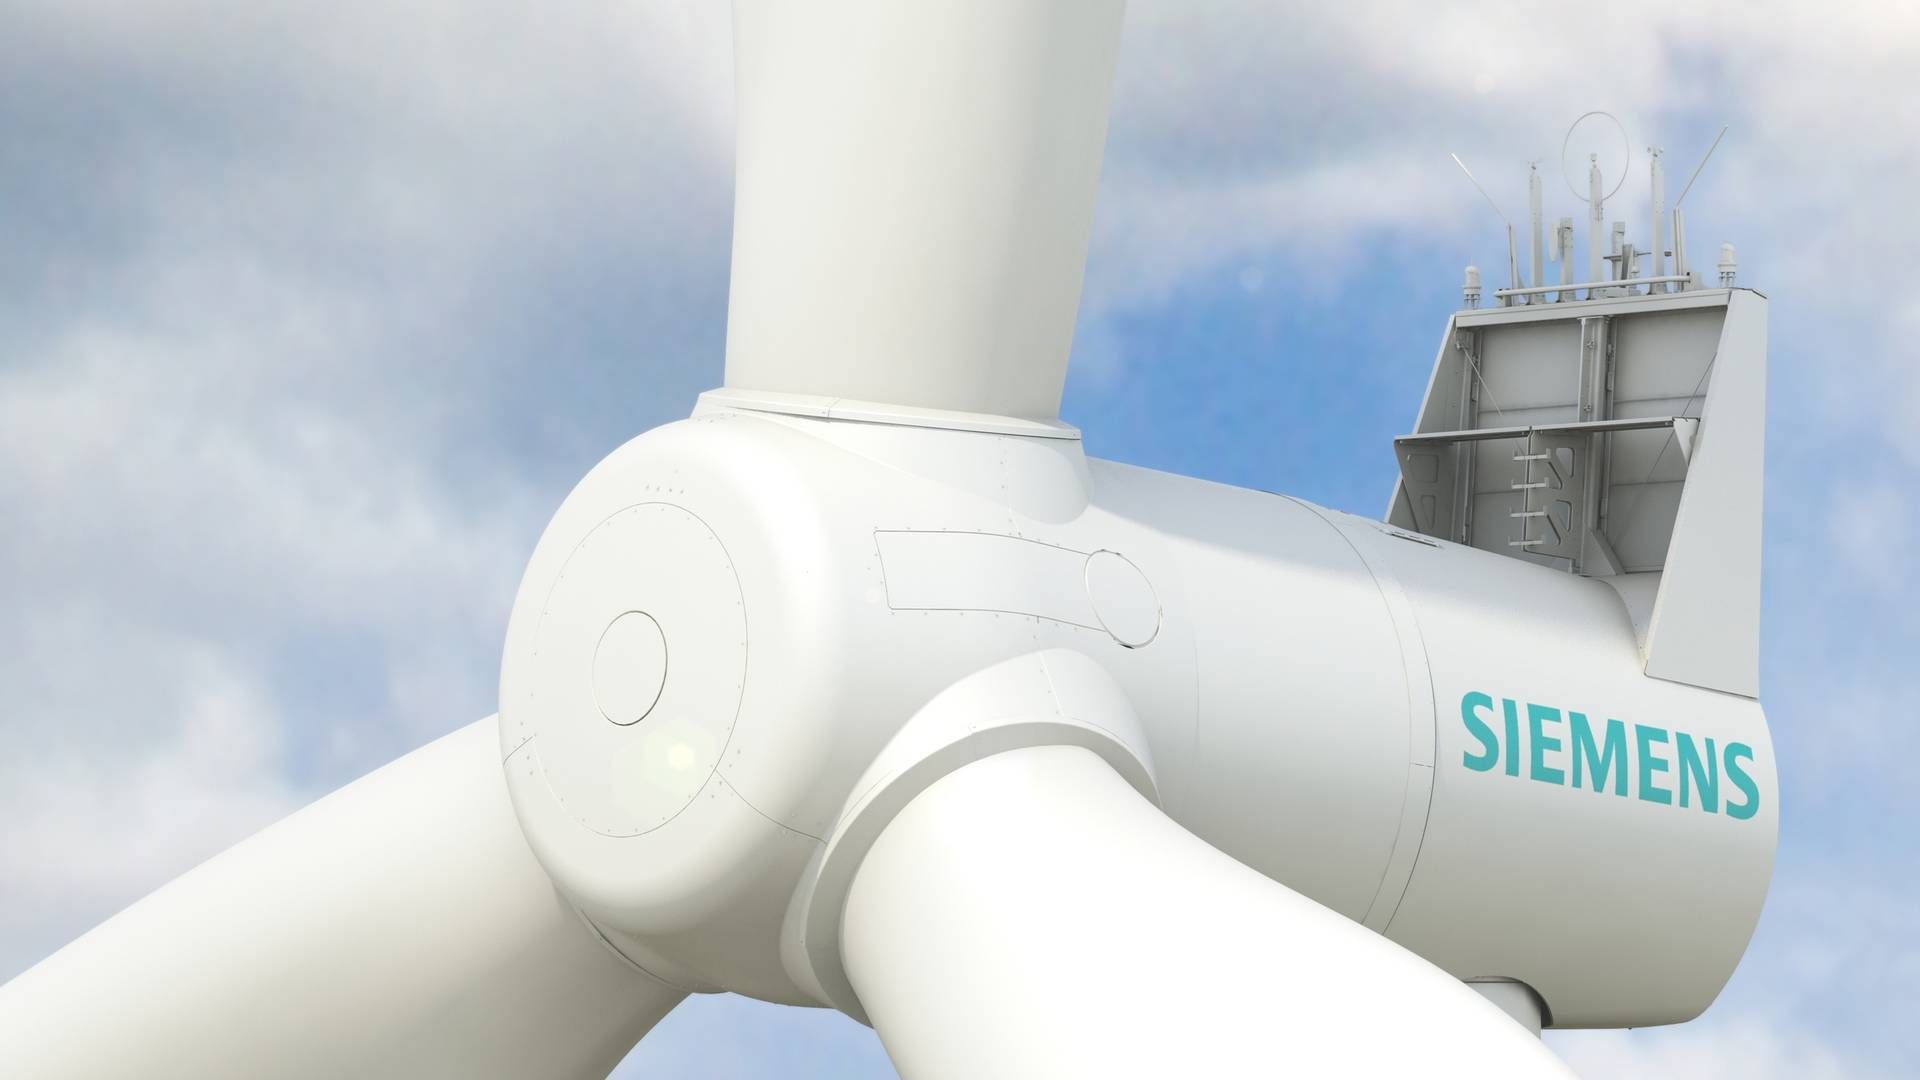 SWT-3.0-113 møllen skal bruges til projektet i Nordtyskland. | Foto: Siemens